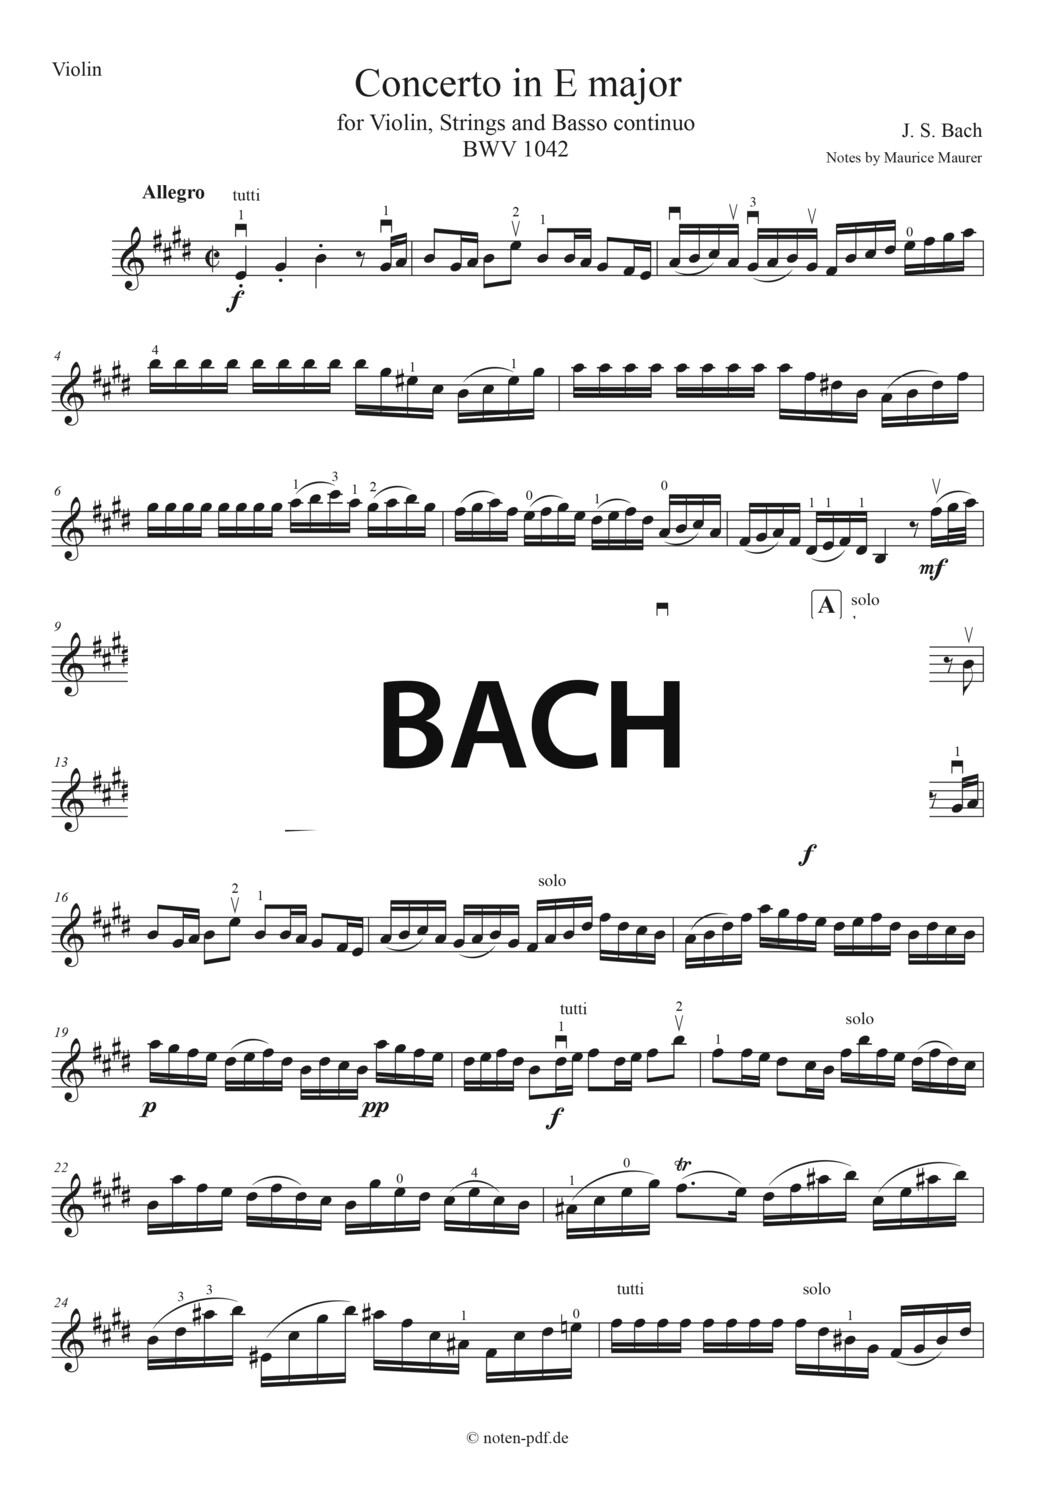 Bach: Concerto in E major - All Movements